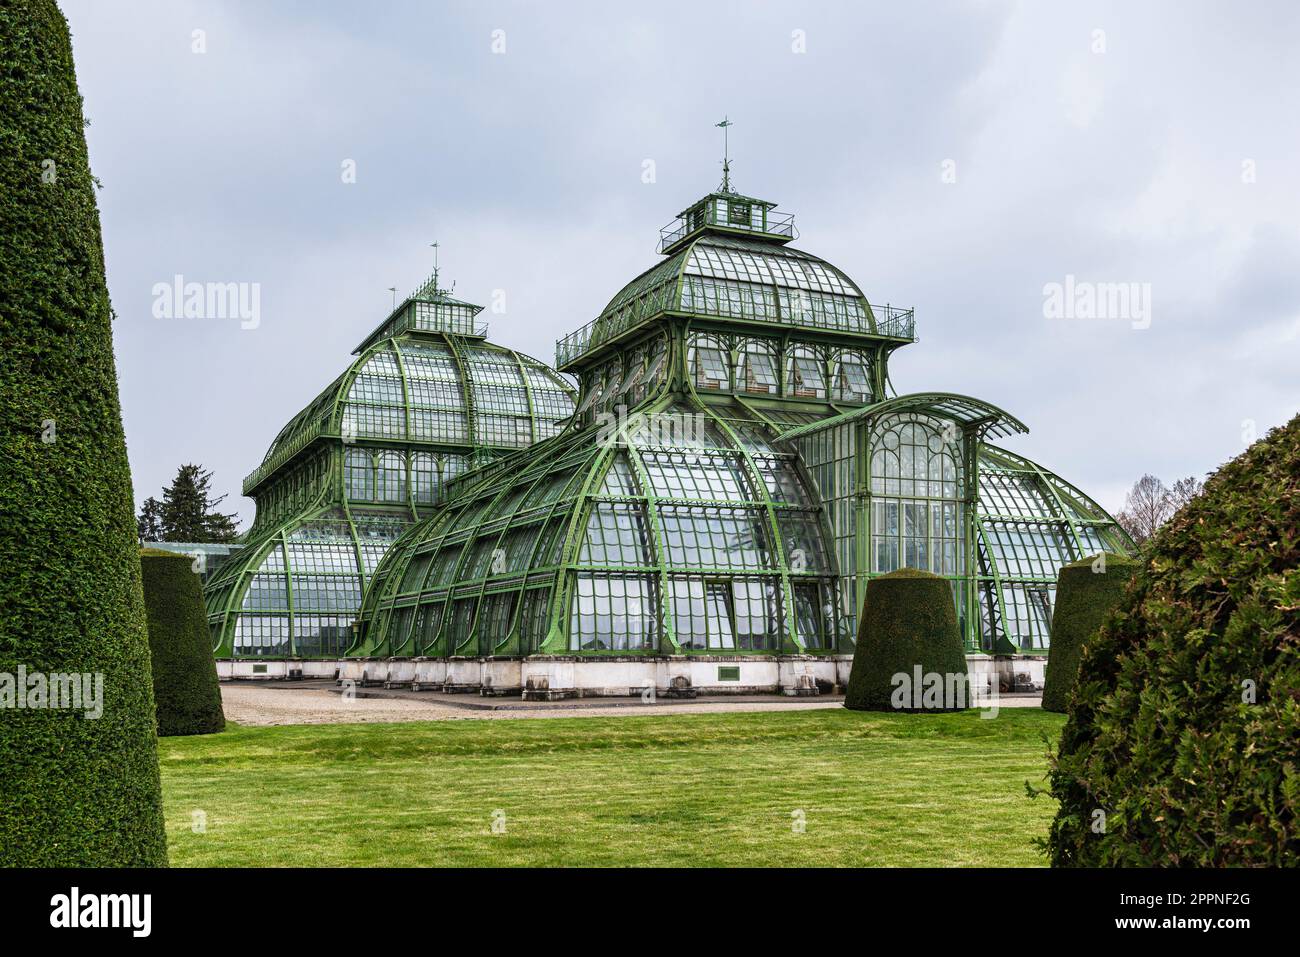 Les dômes du Palm House en fer forgé, fonte et verre dans le parc du château de Schönbrunn sous un ciel gris couvert, Vienne, Autriche Banque D'Images